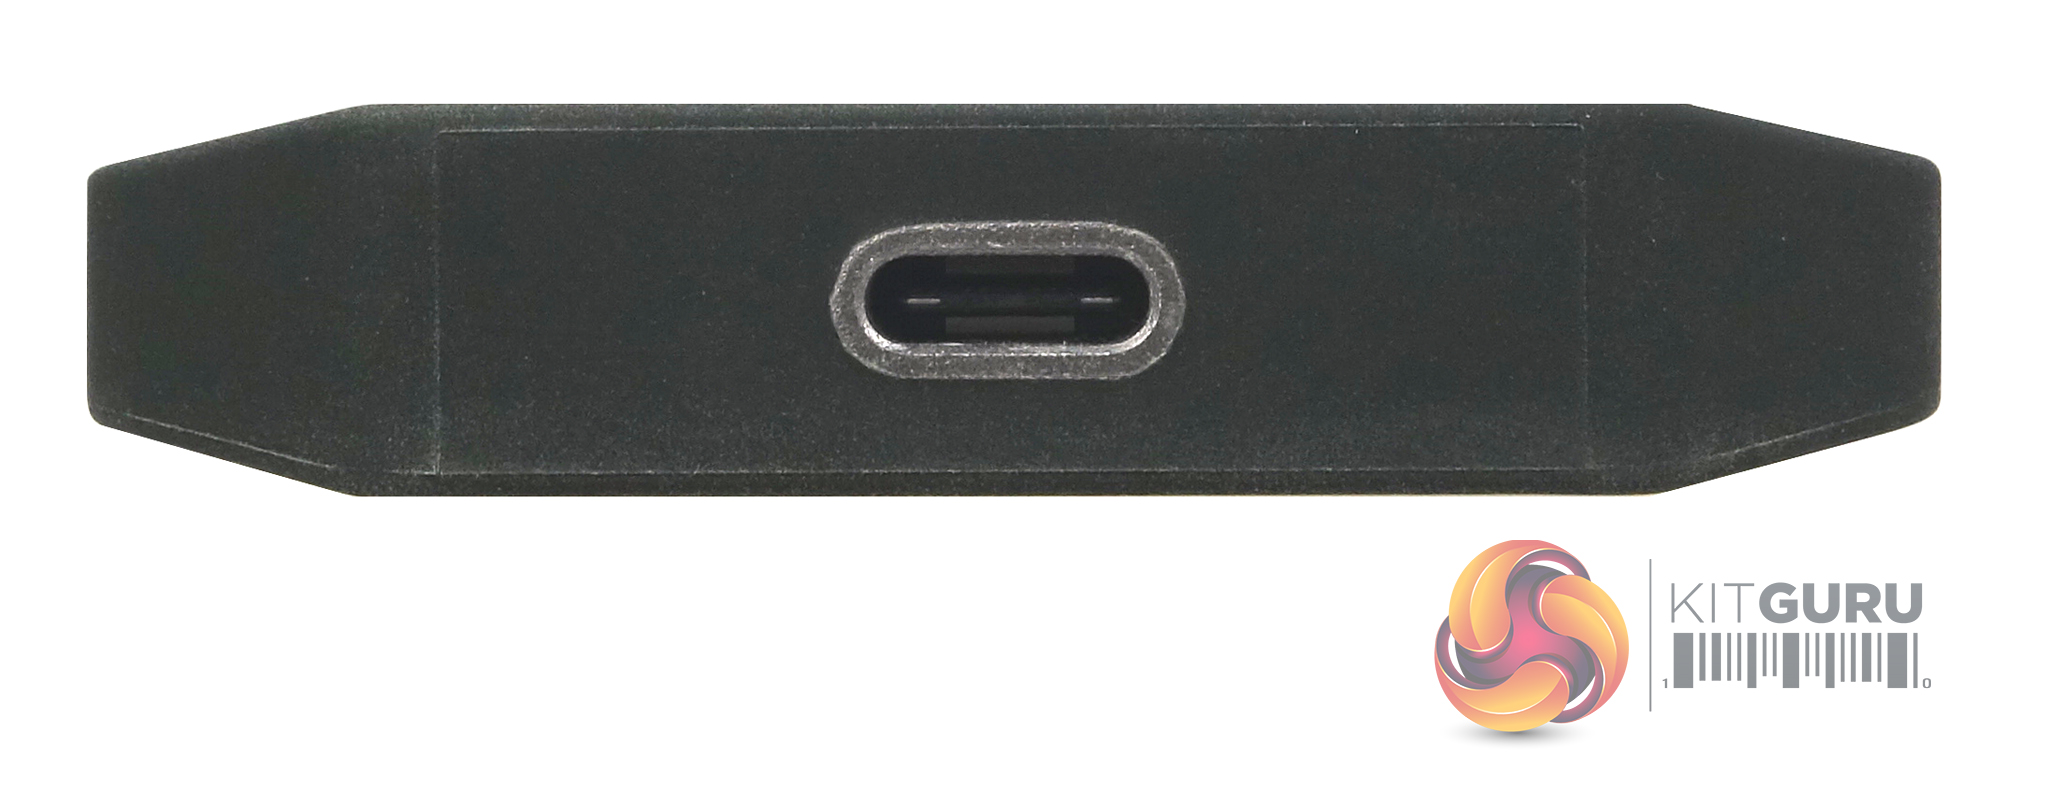 SSD externe GENERIQUE SanDisk Professional PRO-G40 - SSD - 4 To - externe  (portable) - USB 3.2 Gen 2 / Thunderbolt 3 (USB-C connecteur)